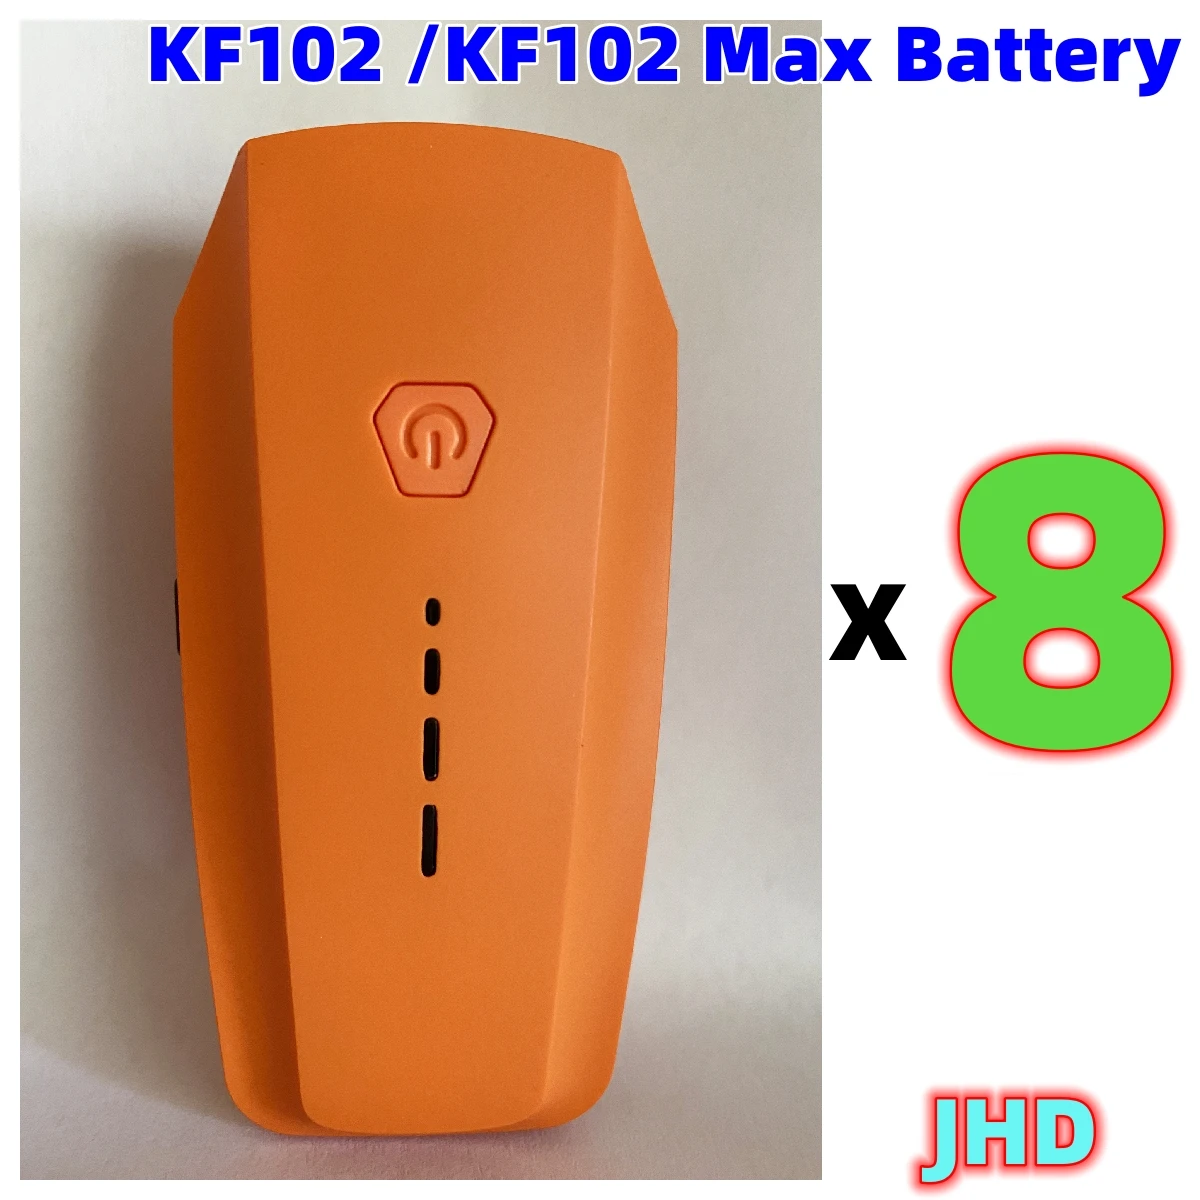 JHD me Shumicë KF102 MAX Baterisë Portokalli Për KF102 Rri 7.4 V 2200mAh Origjinale Rri kot e Baterisë KF102 MAX Pajisje Pjesë . ' - ' . 3